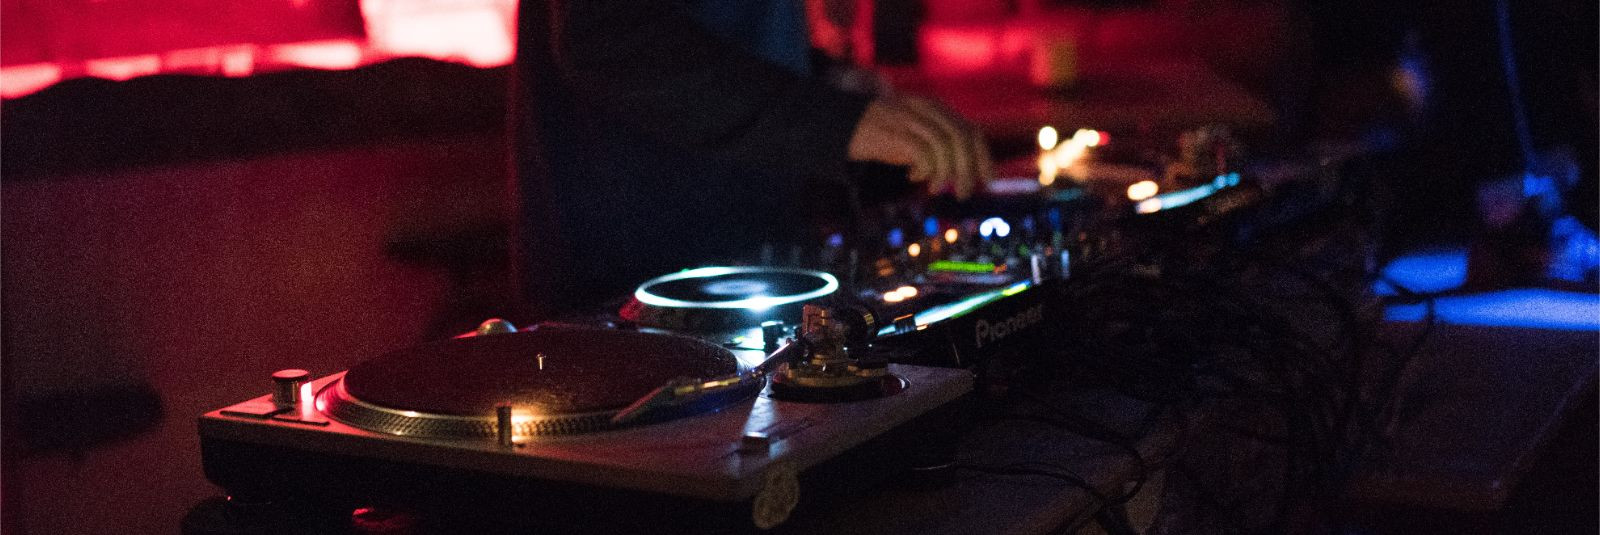 DJ (diskor) töö on rohkem kui lihtsalt plaatide keerutamine ja muusika mängimine. See on kunst, mis nõuab kirge muusika vastu, tehnilisi oskusi ja võimet tunda 